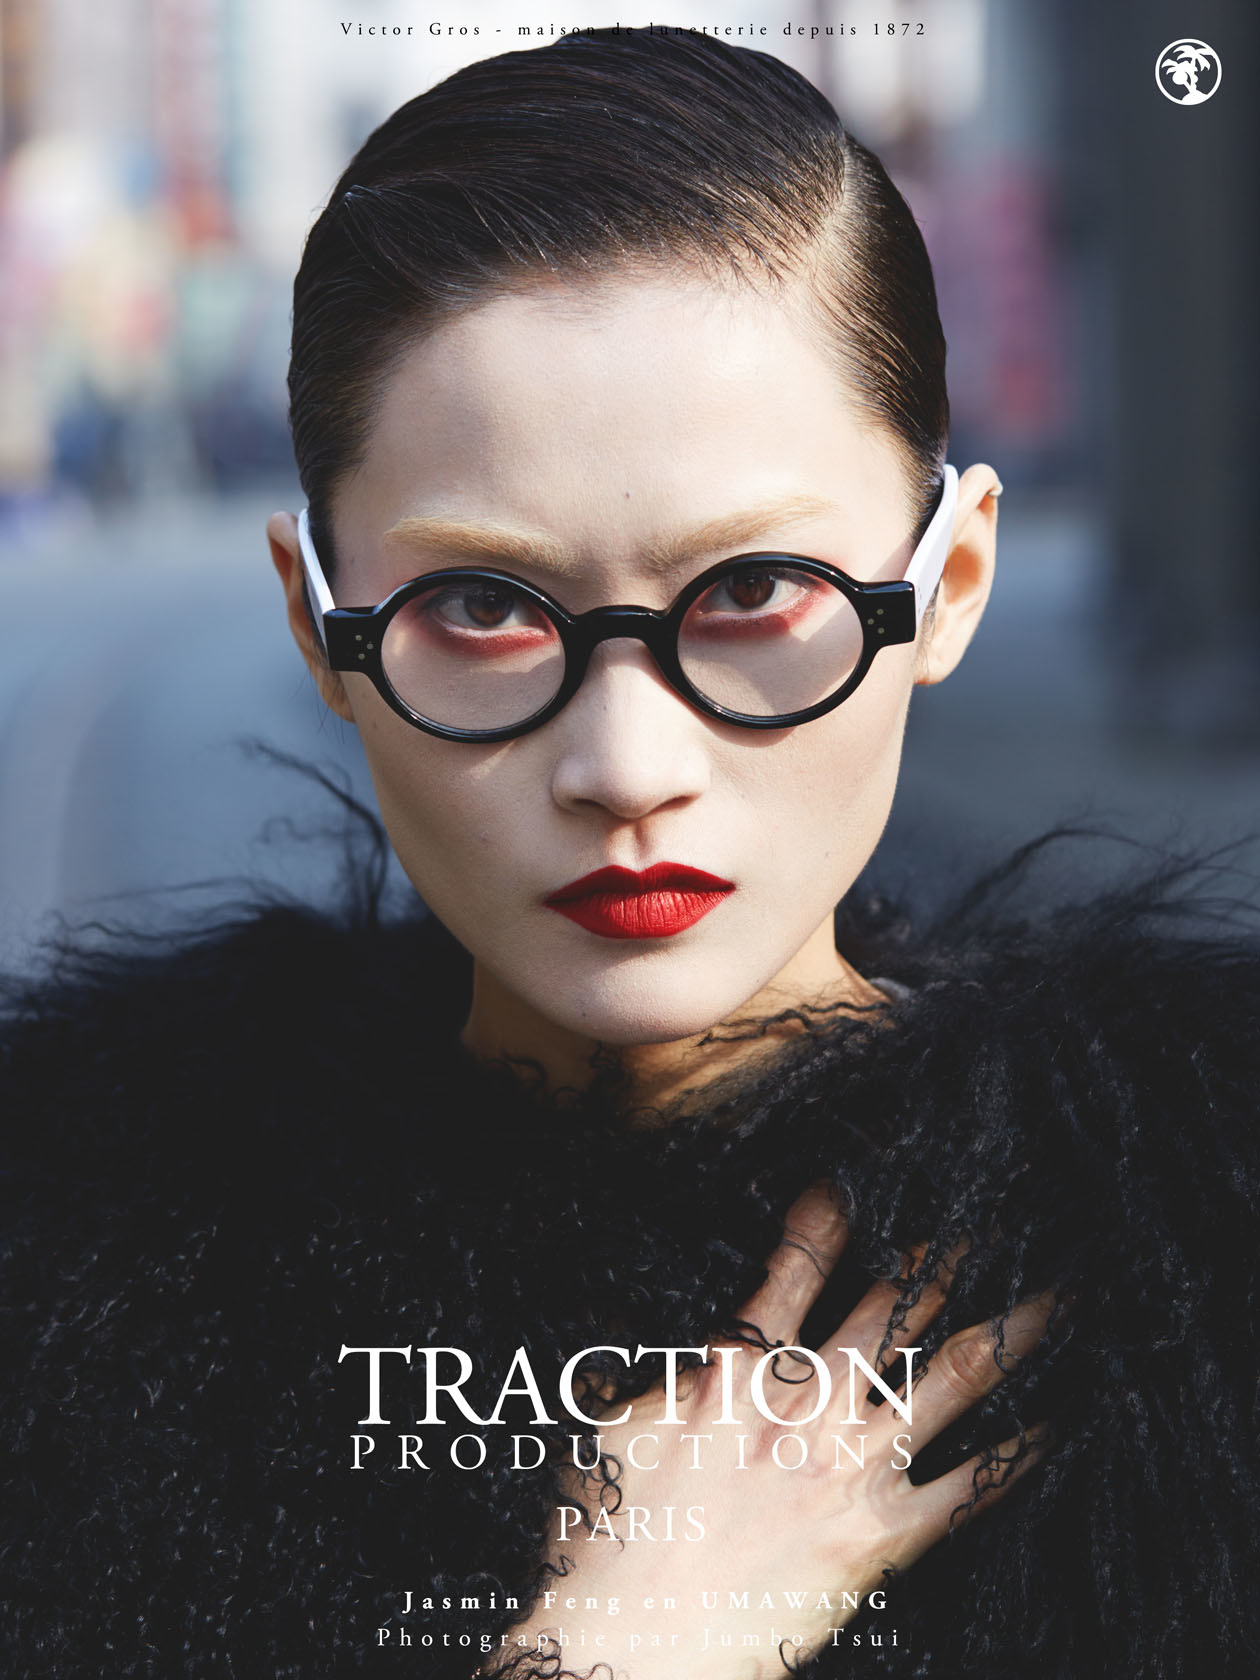 Traction Productions Paris 2015 Campaign